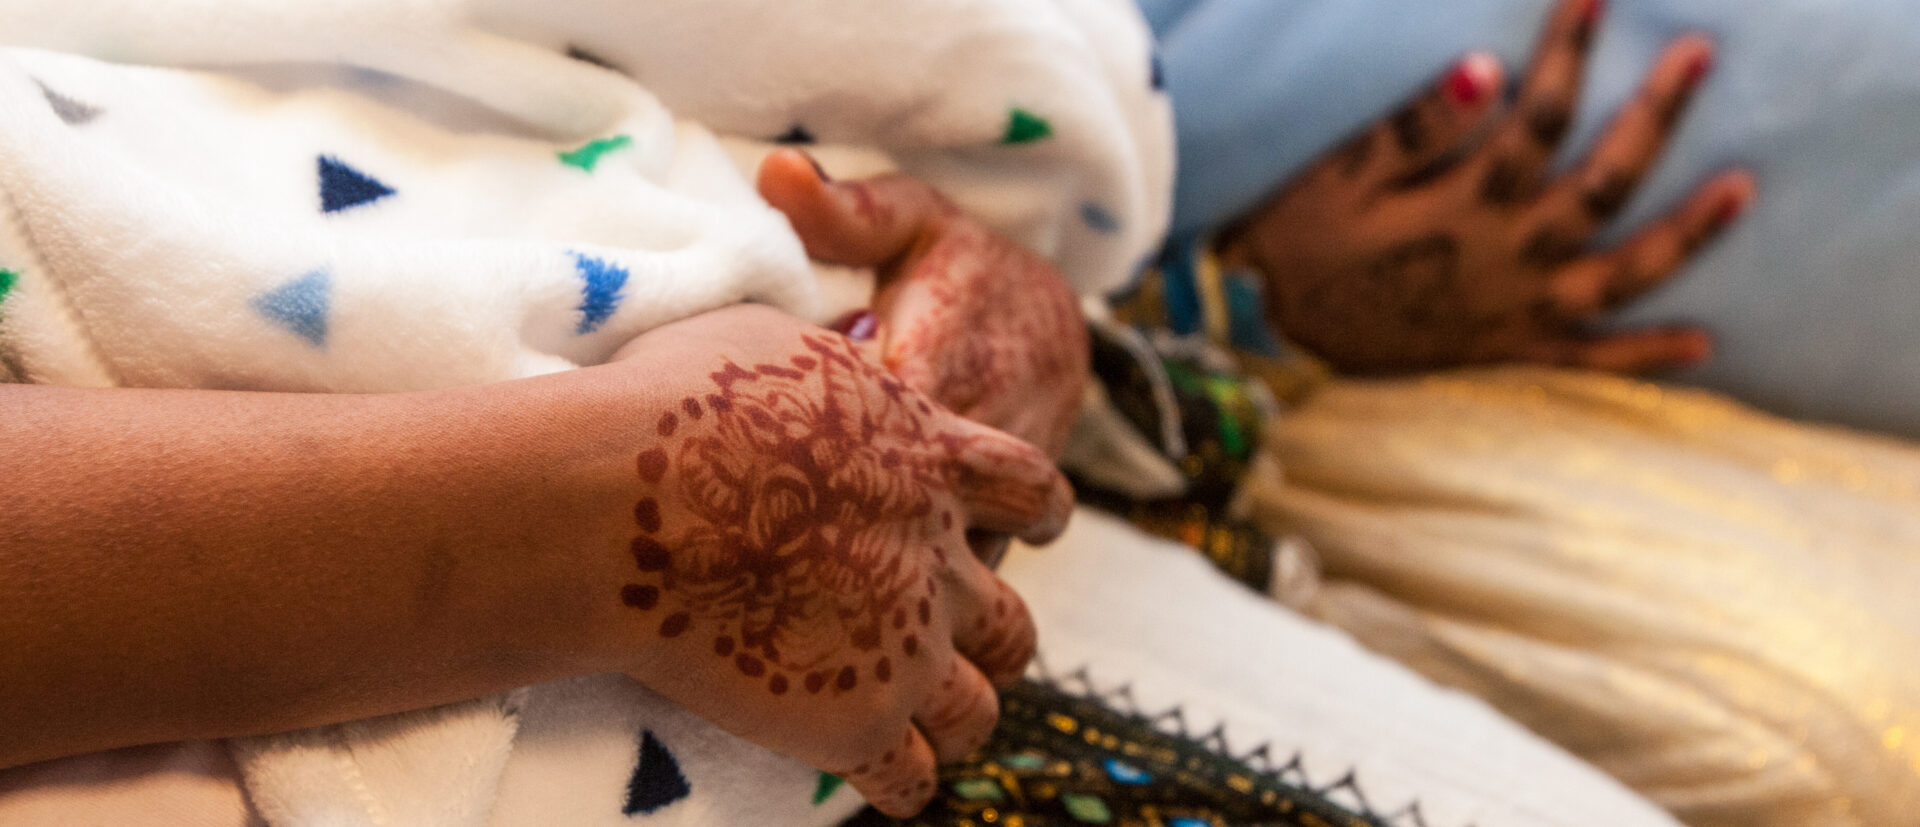 Frauen aus einer eritreisch-orthodoxen Gemeinde halten ihre in Tücher gewickelten Säuglinge in den Armen. Sie sind traditionell gekleidet und haben mit Ornamenten verzierte Hände.